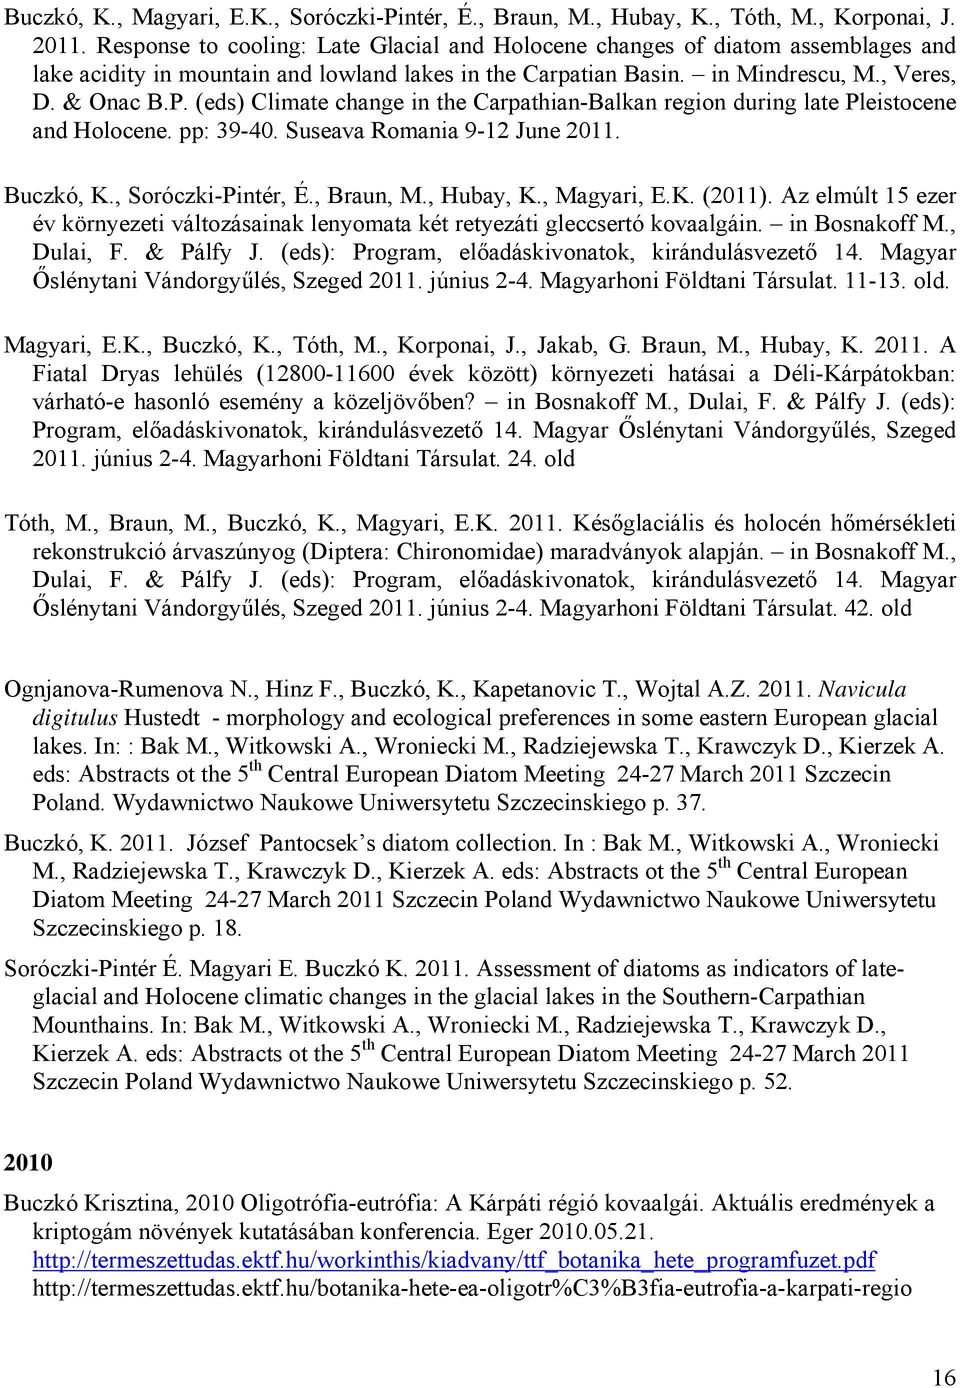 (eds) Climate change in the Carpathian-Balkan region during late Pleistocene and Holocene. pp: 39-40. Suseava Romania 9-12 June 2011. Buczkó, K., Soróczki-Pintér, É., Braun, M., Hubay, K., Magyari, E.